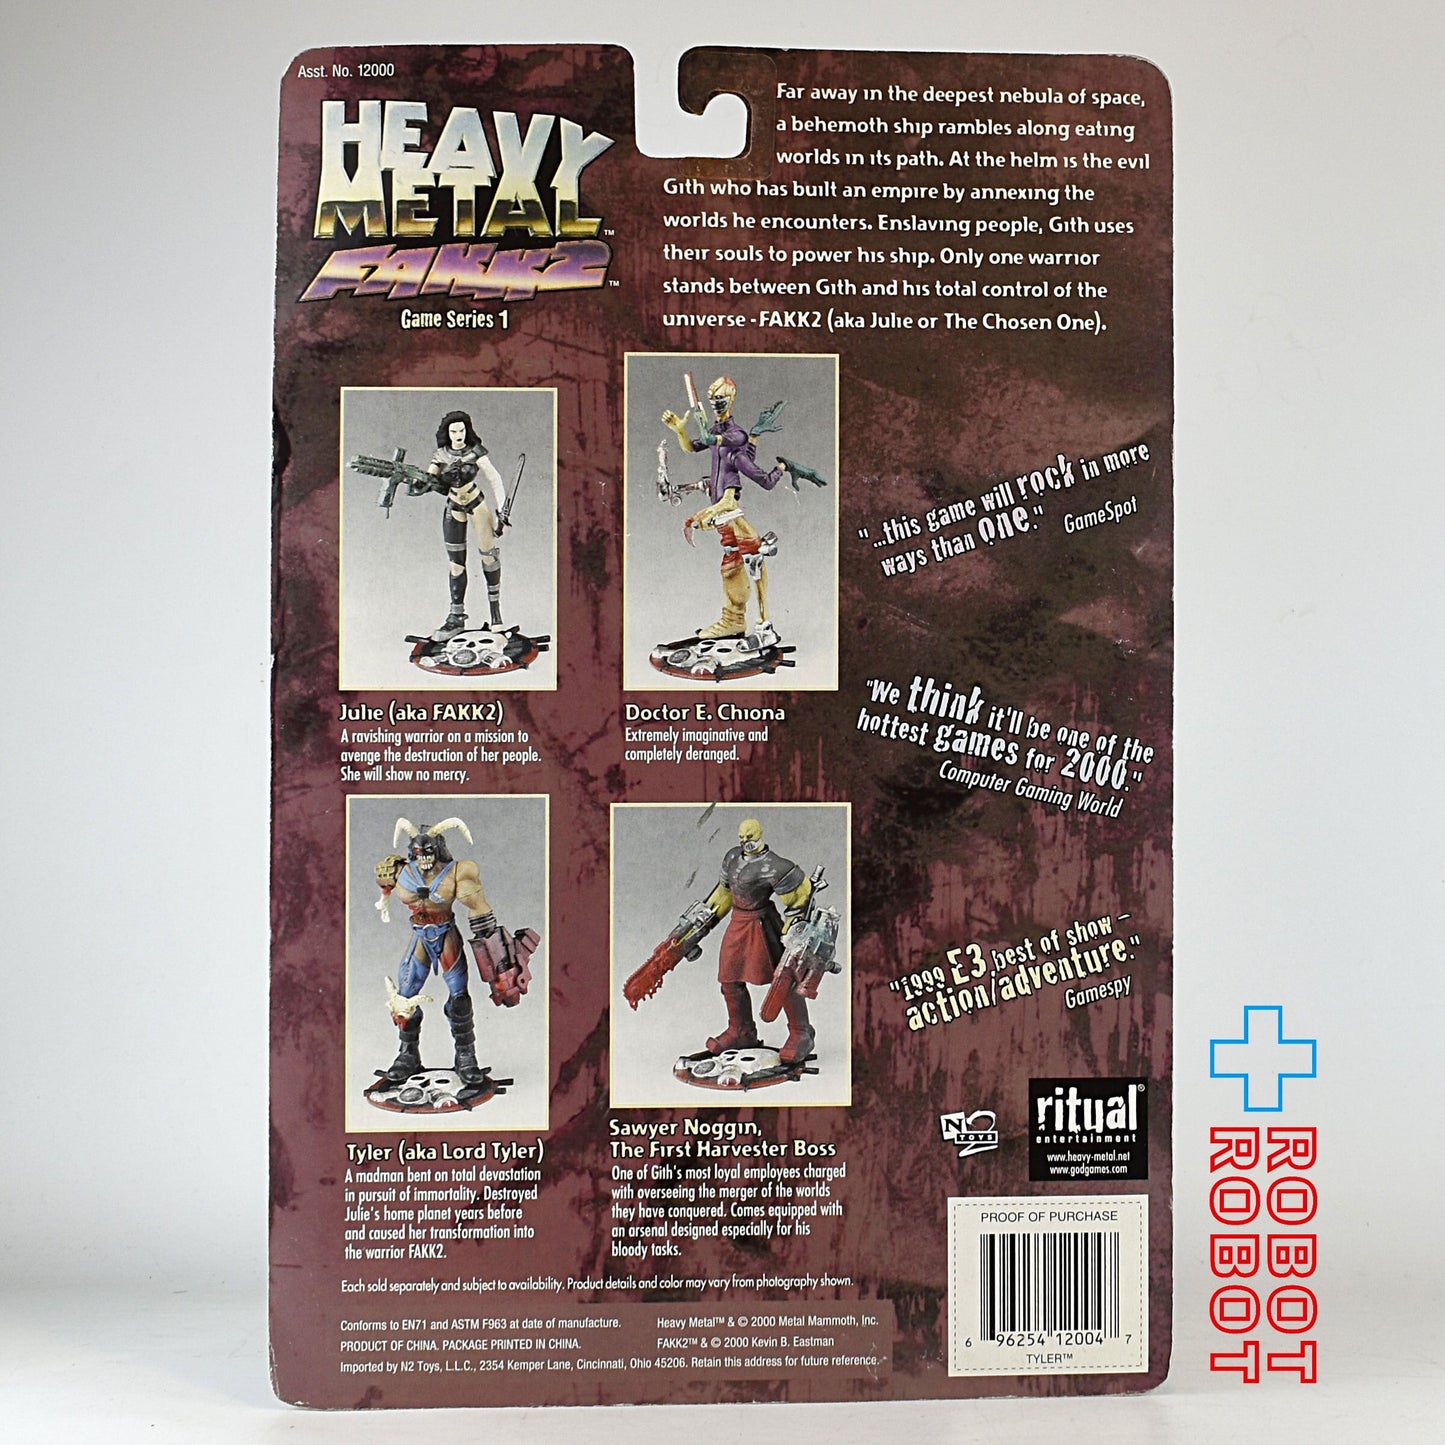 ヘヴィ・メタル FAKK2 ゲームシリーズ1 タイラー アクションフィギュア MOC